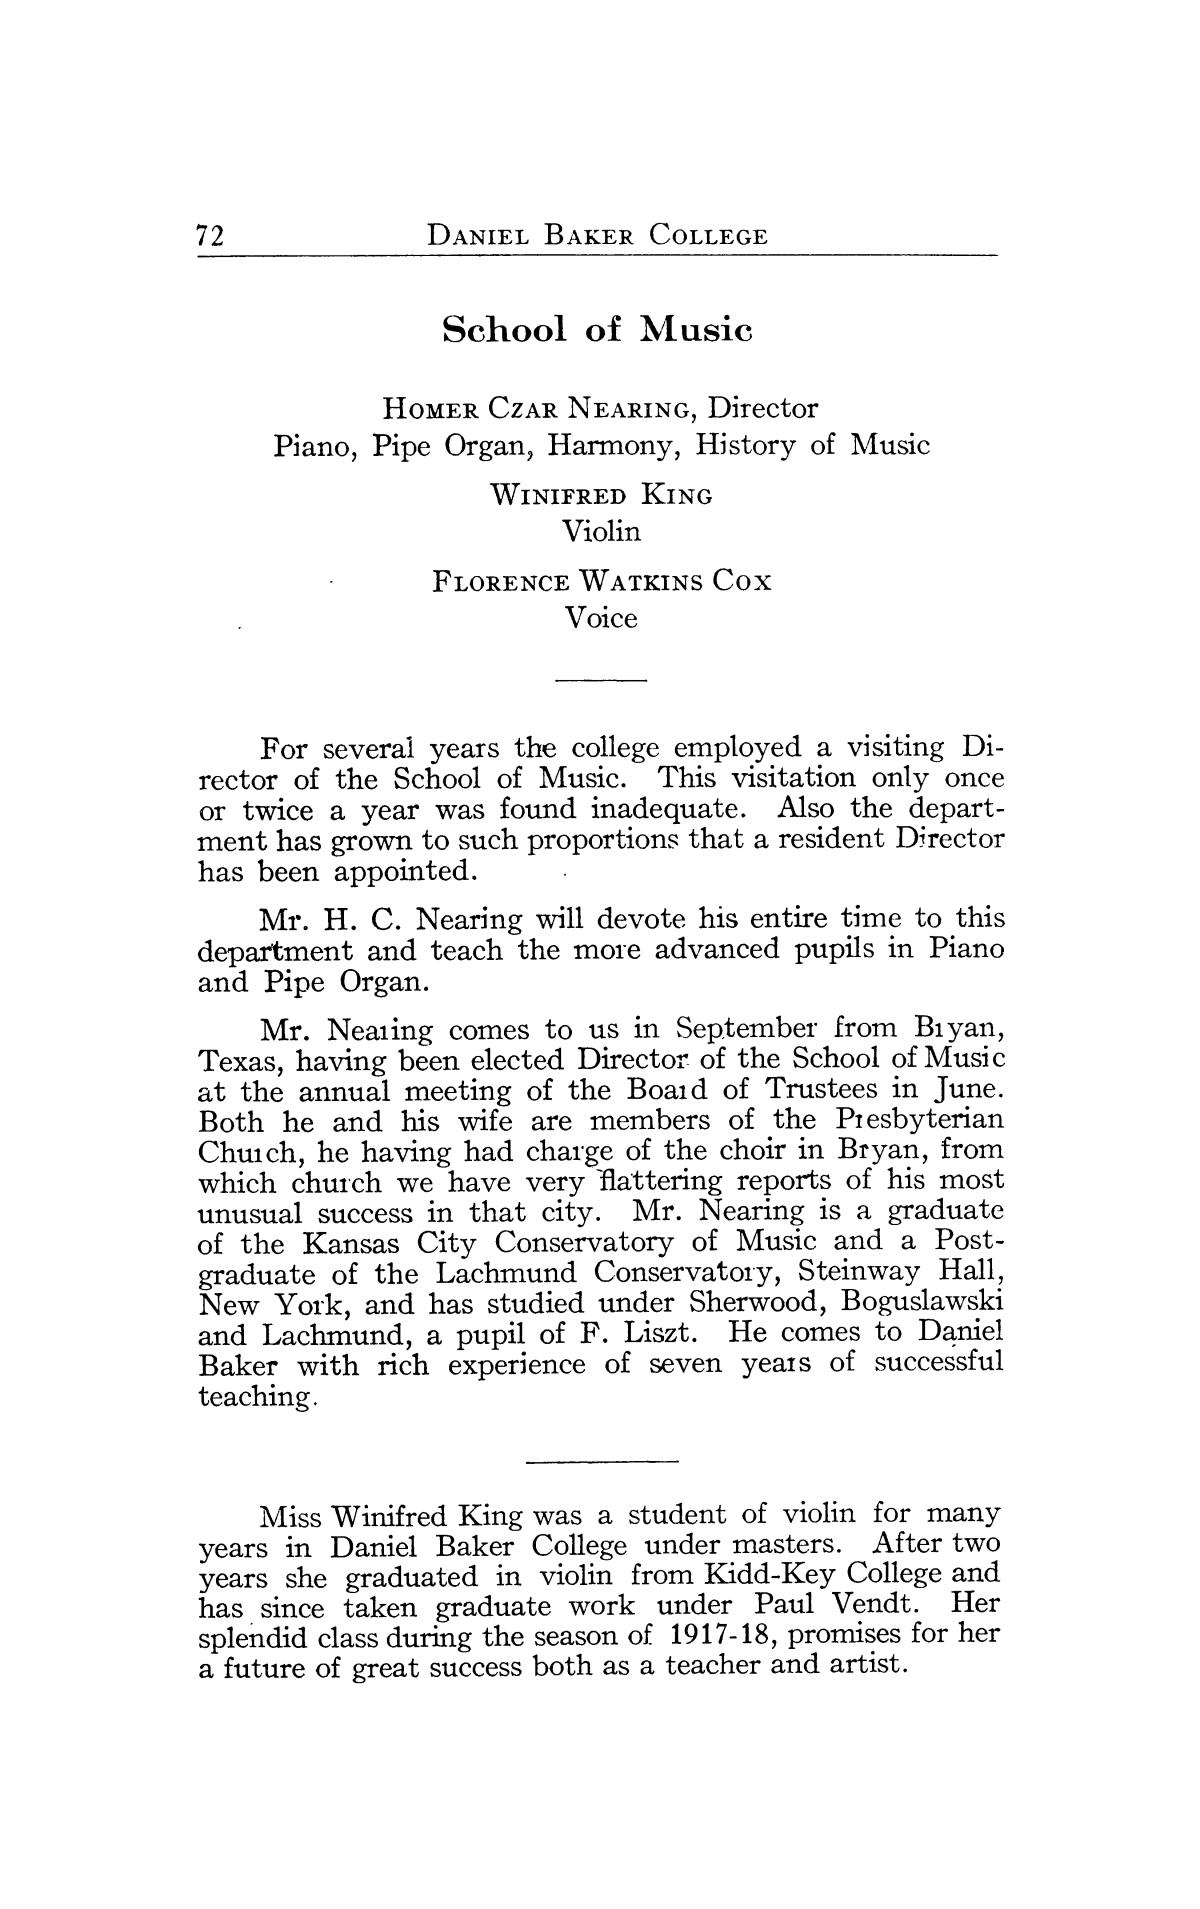 Catalog of Daniel Baker College, 1917-1918
                                                
                                                    72
                                                